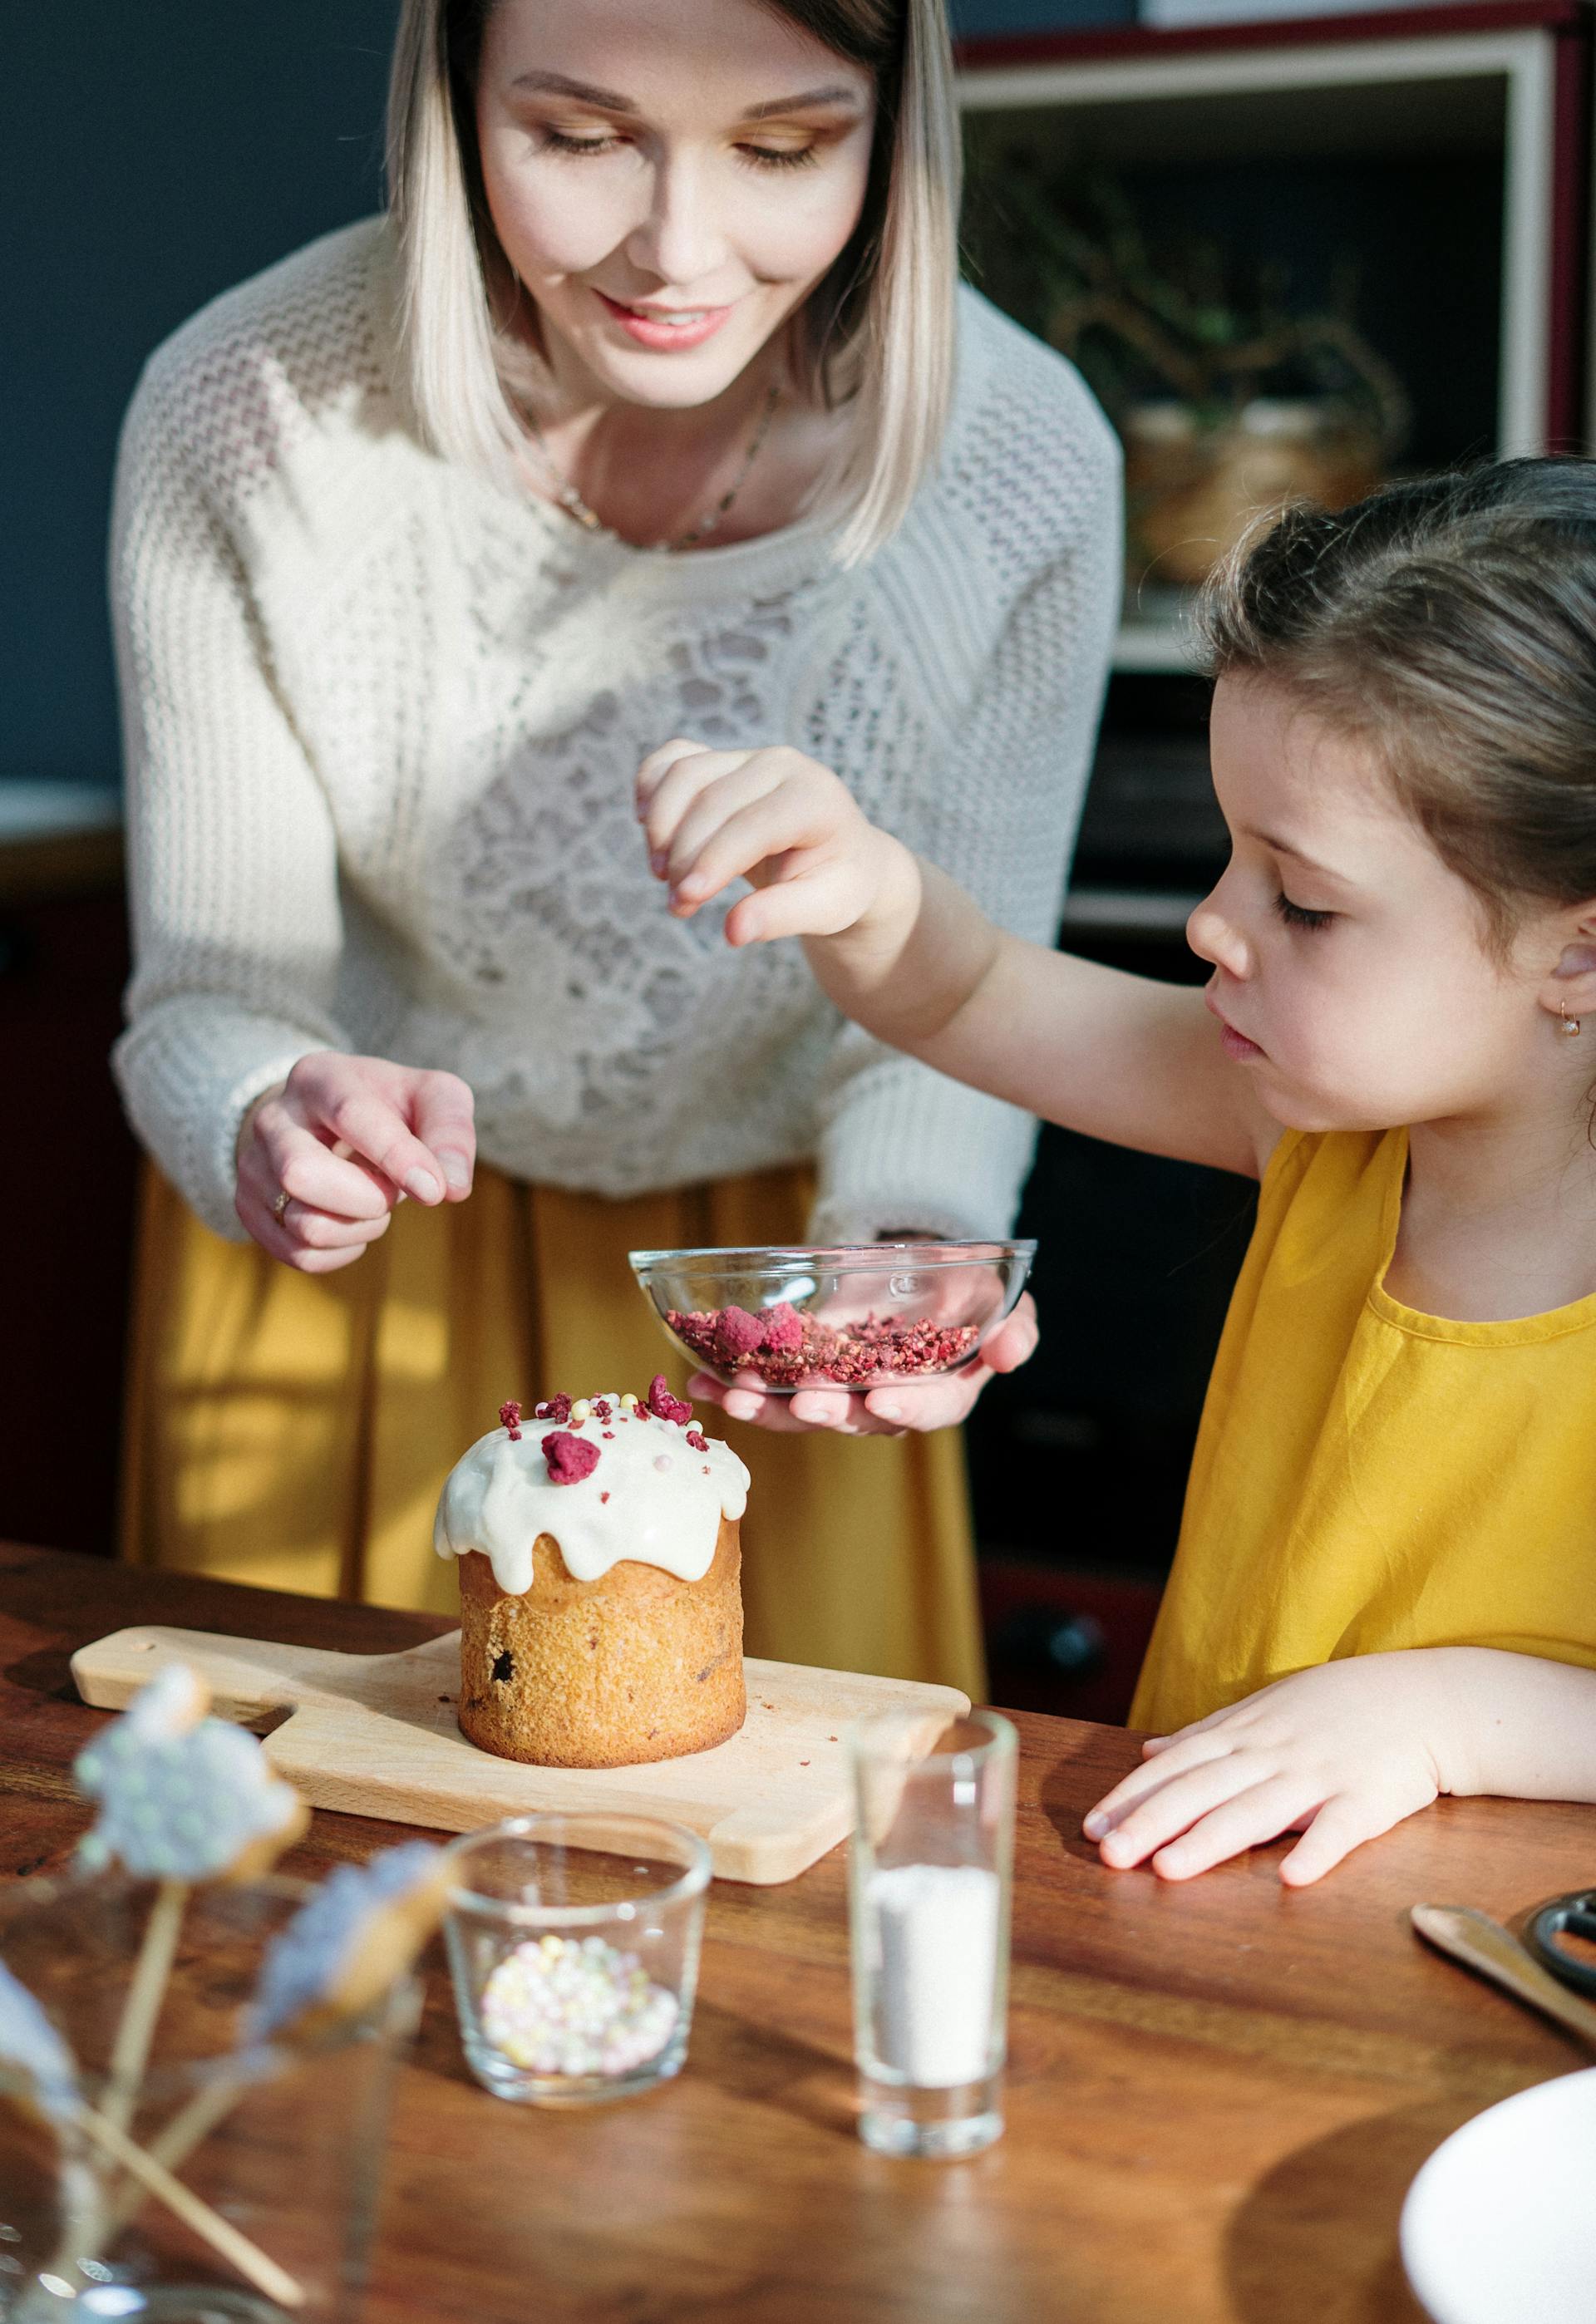 Una mujer y una niña decorando un Pastel | Fuente: Pexels